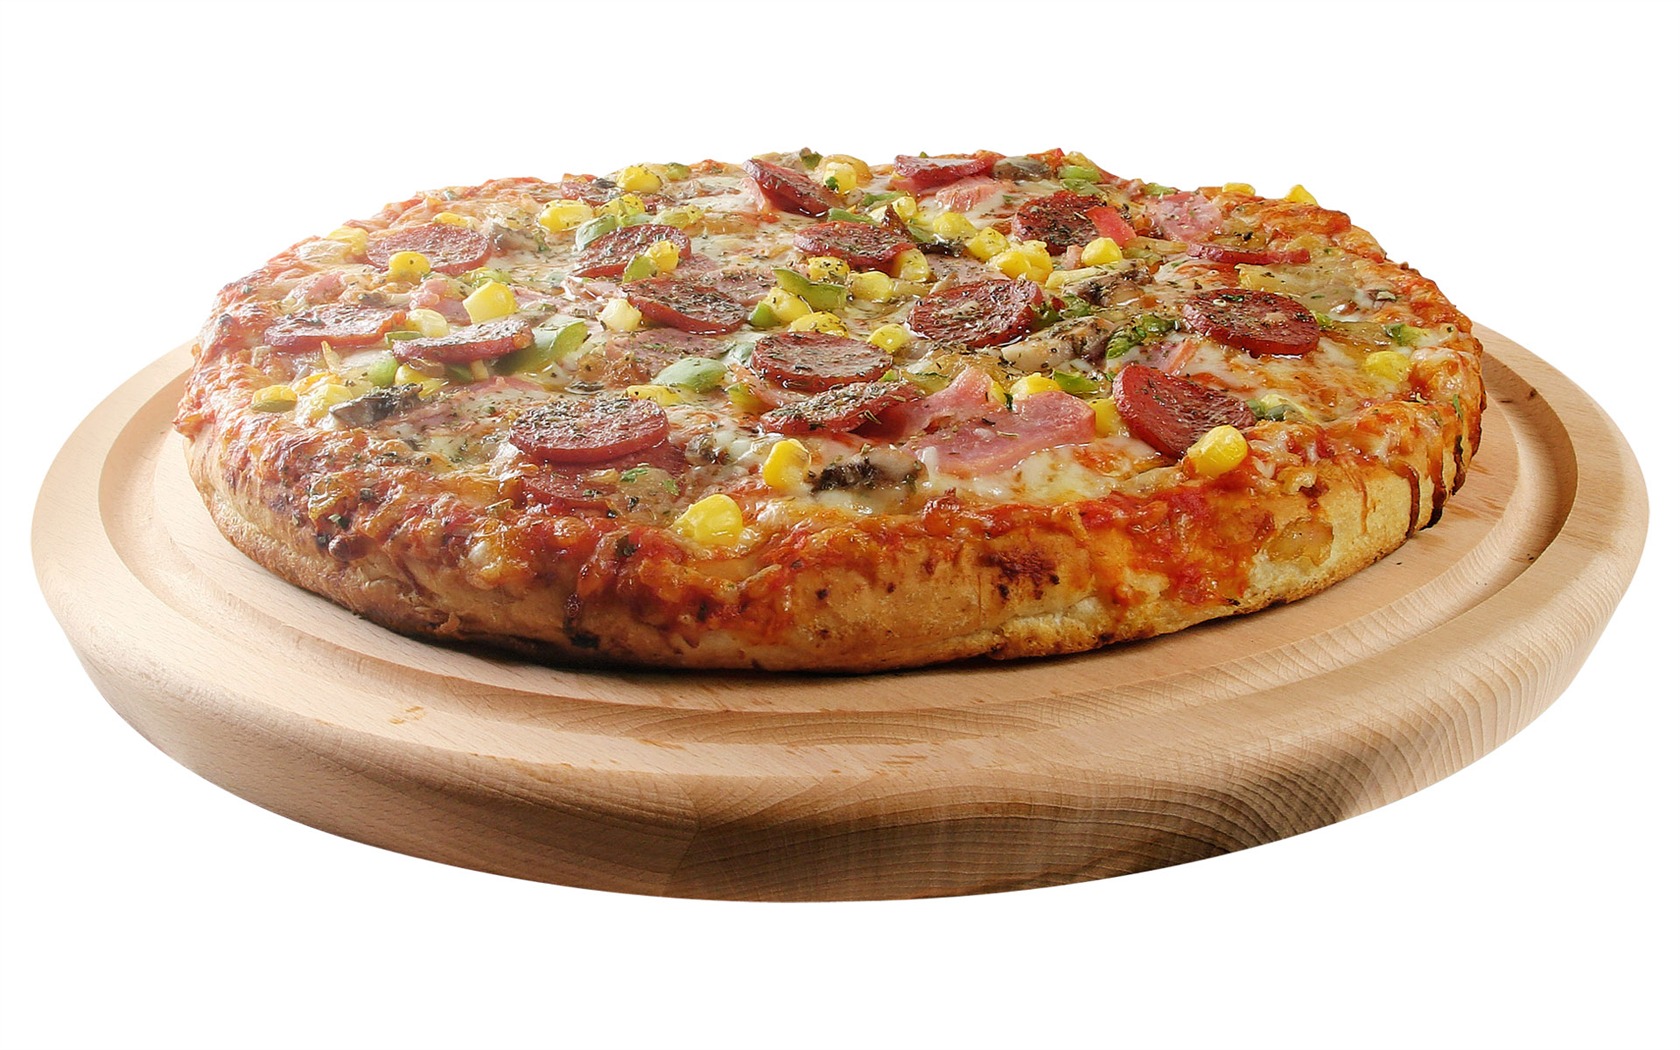 Fondos de pizzerías de Alimentos (3) #14 - 1680x1050